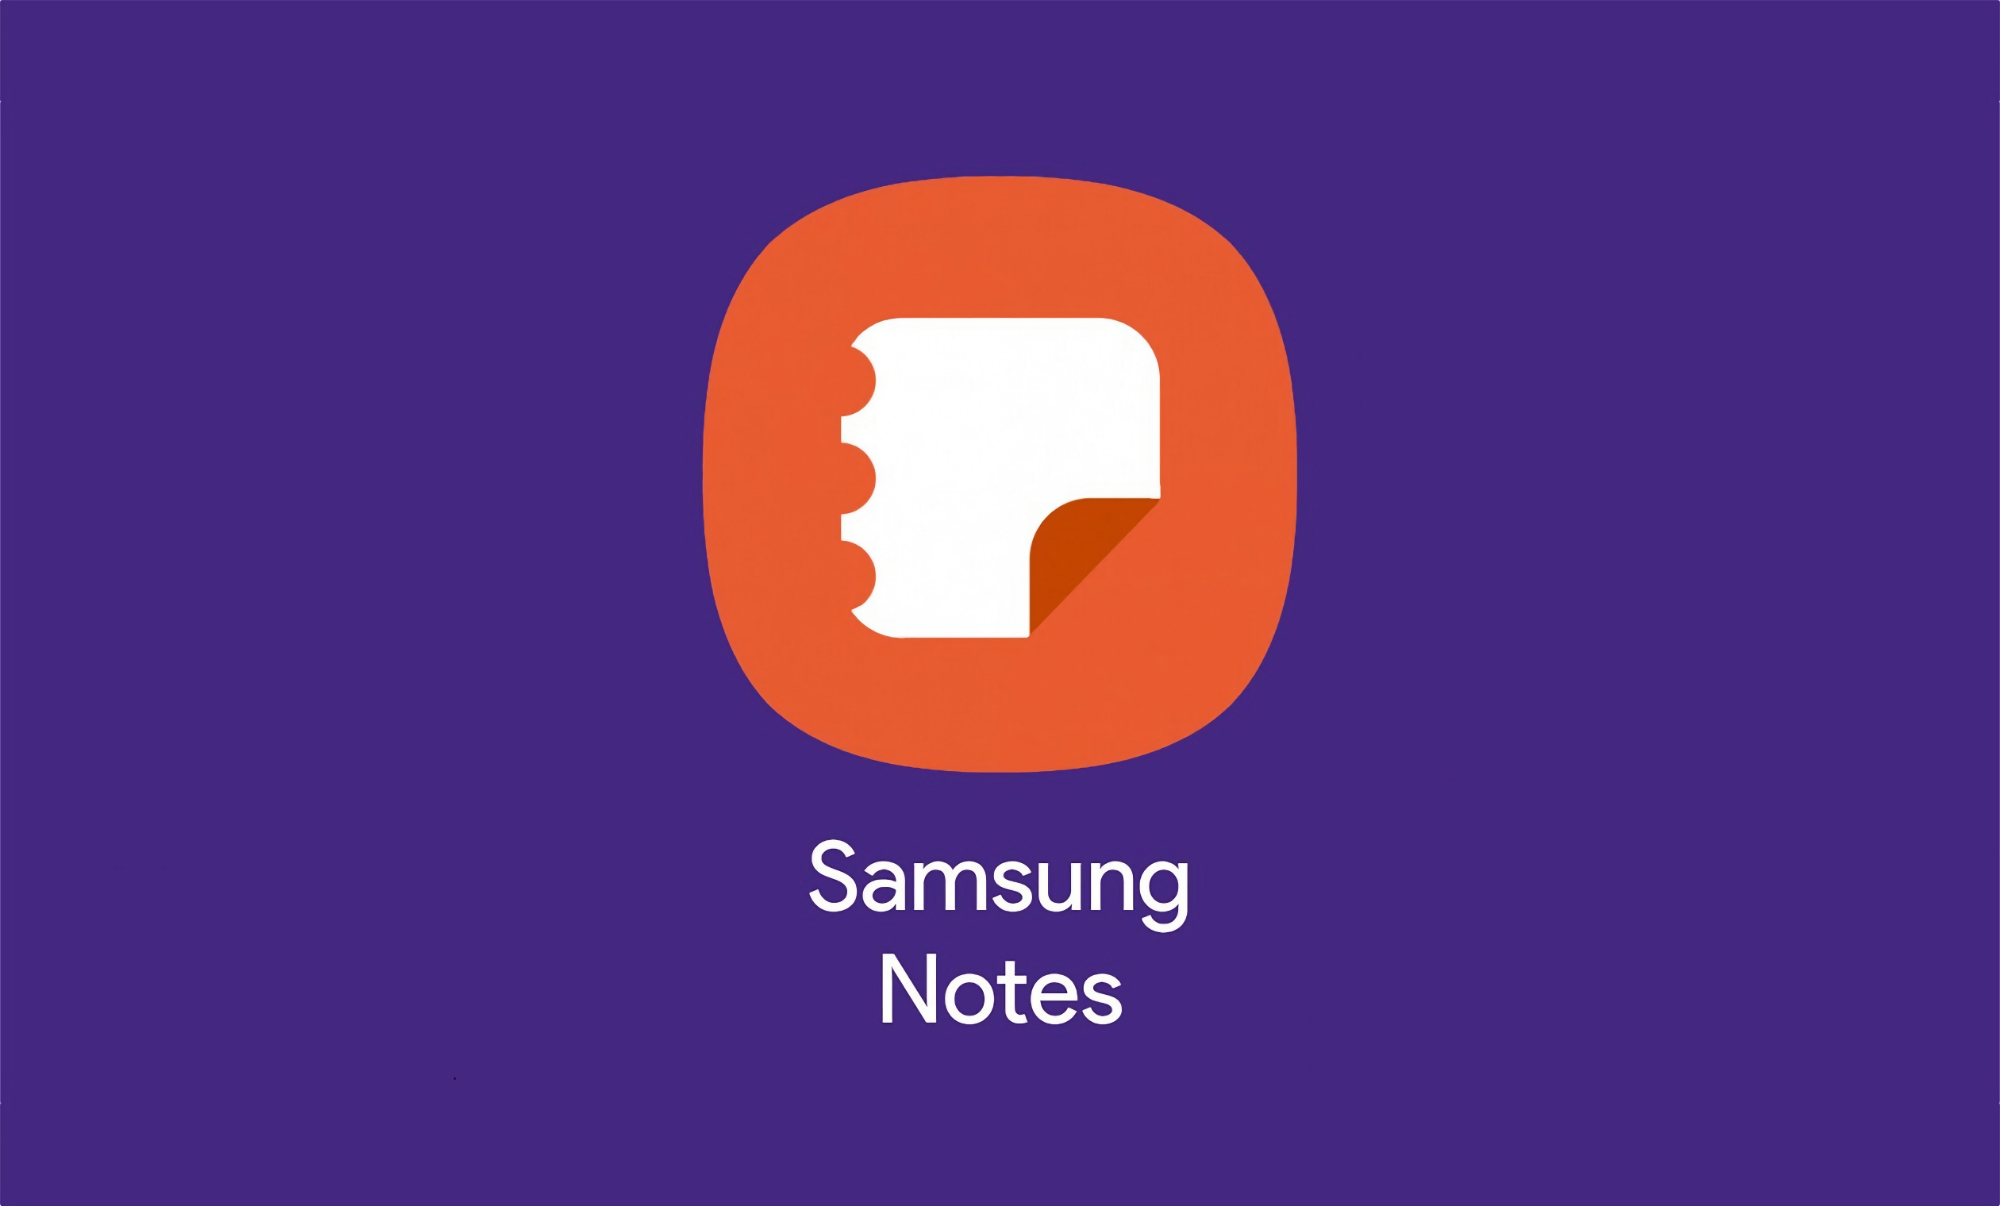 Aplikacja Samsung Notes otrzymała widżet listy notatek wraz z aktualizacją